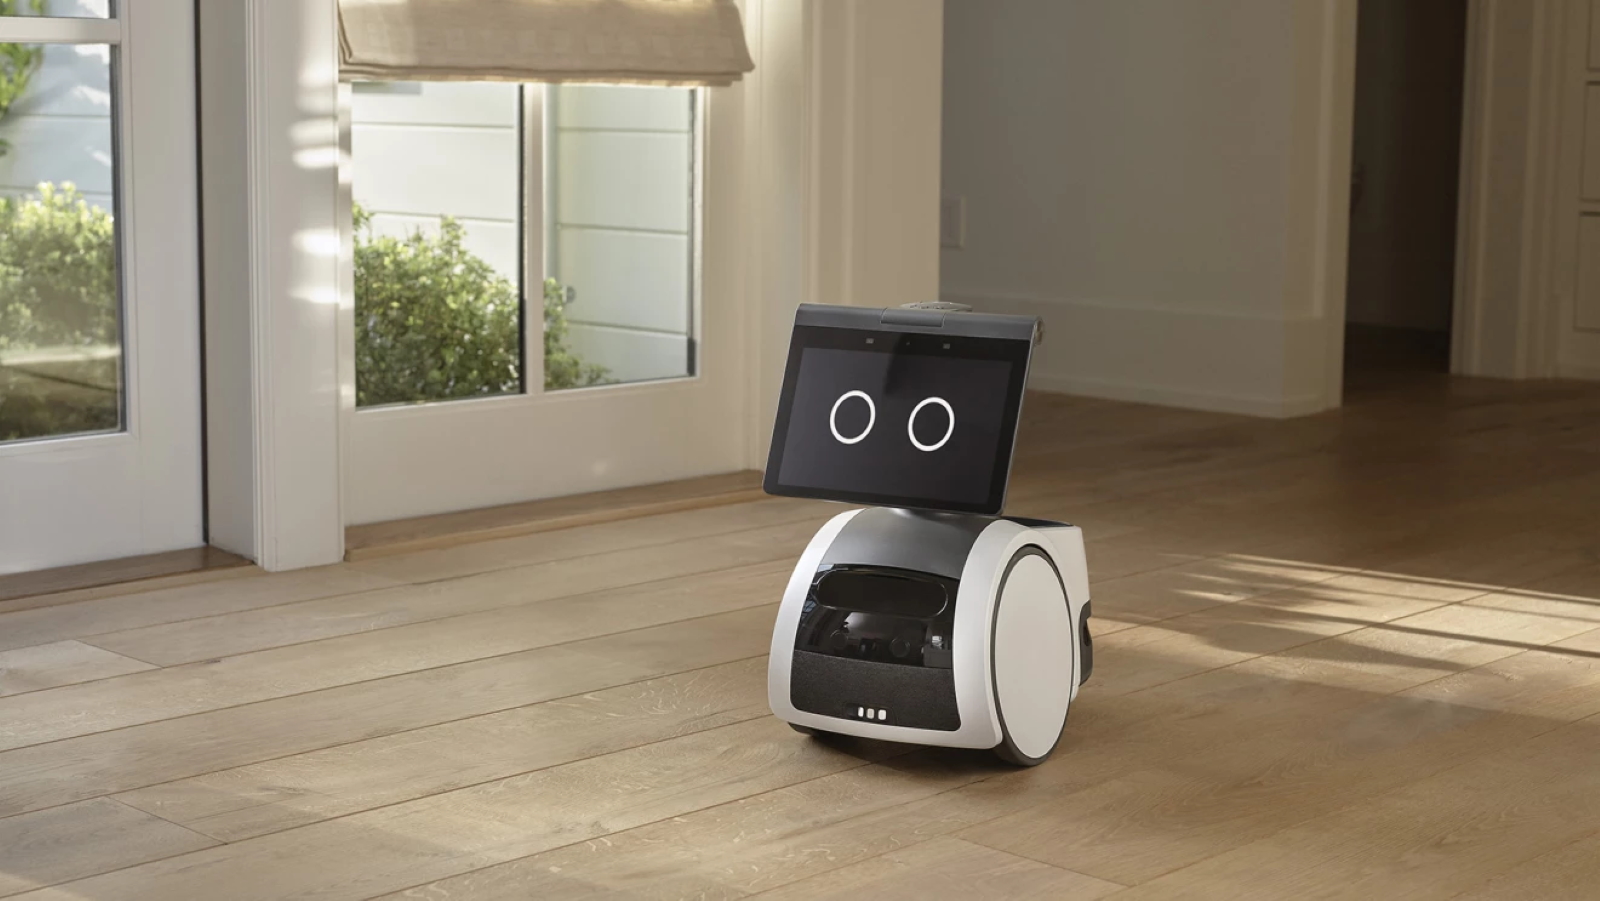 Astro est un robot de compagnie, mais aussi un outil de surveillance pour sécuriser le domicile. © Amazon